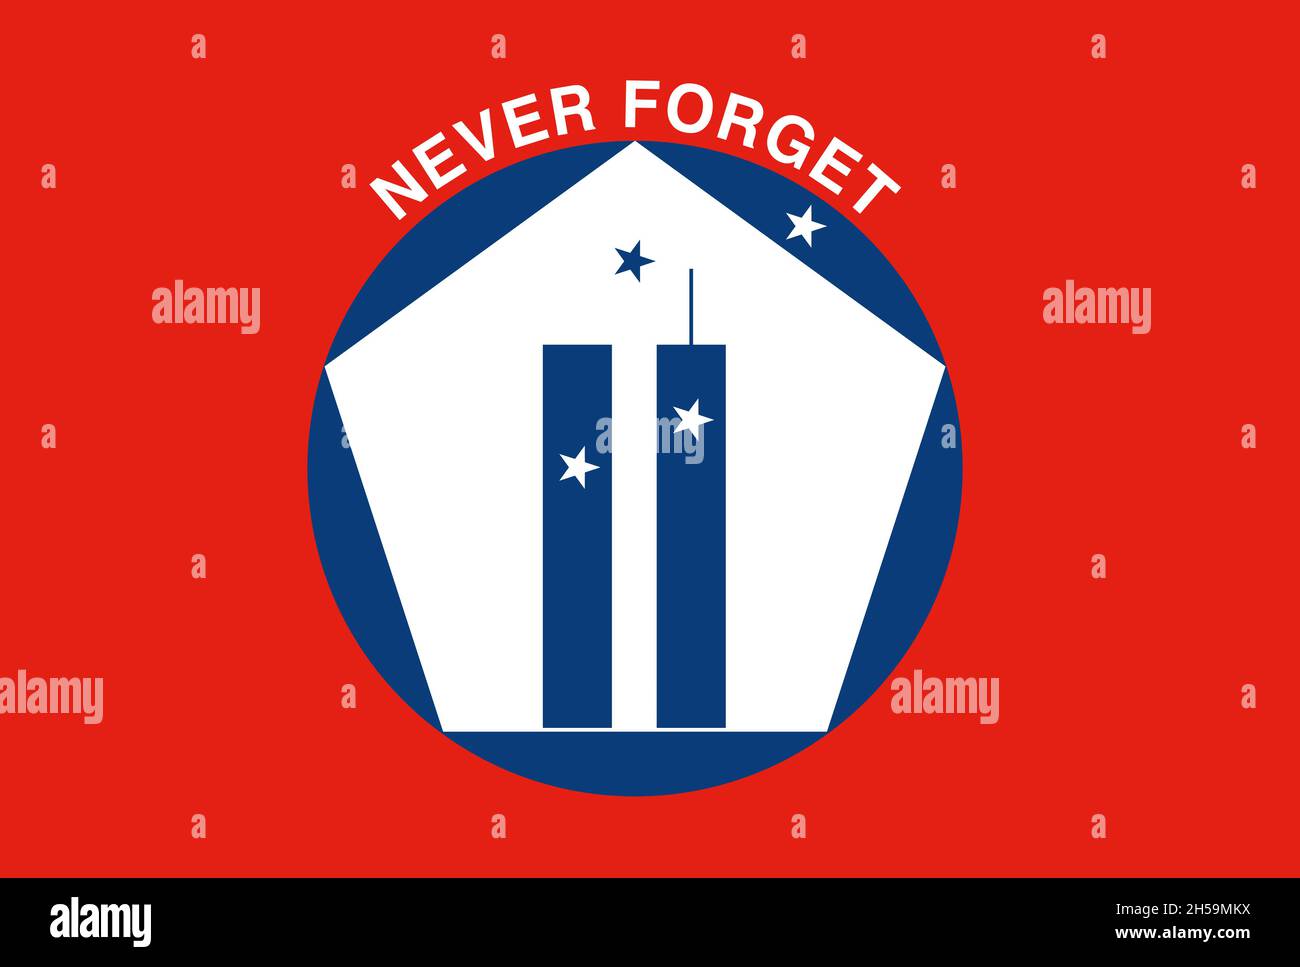 Vergessen Sie nie die Gedenkflagge für WTC, New York, USA, Vektorgrafik Stock Vektor